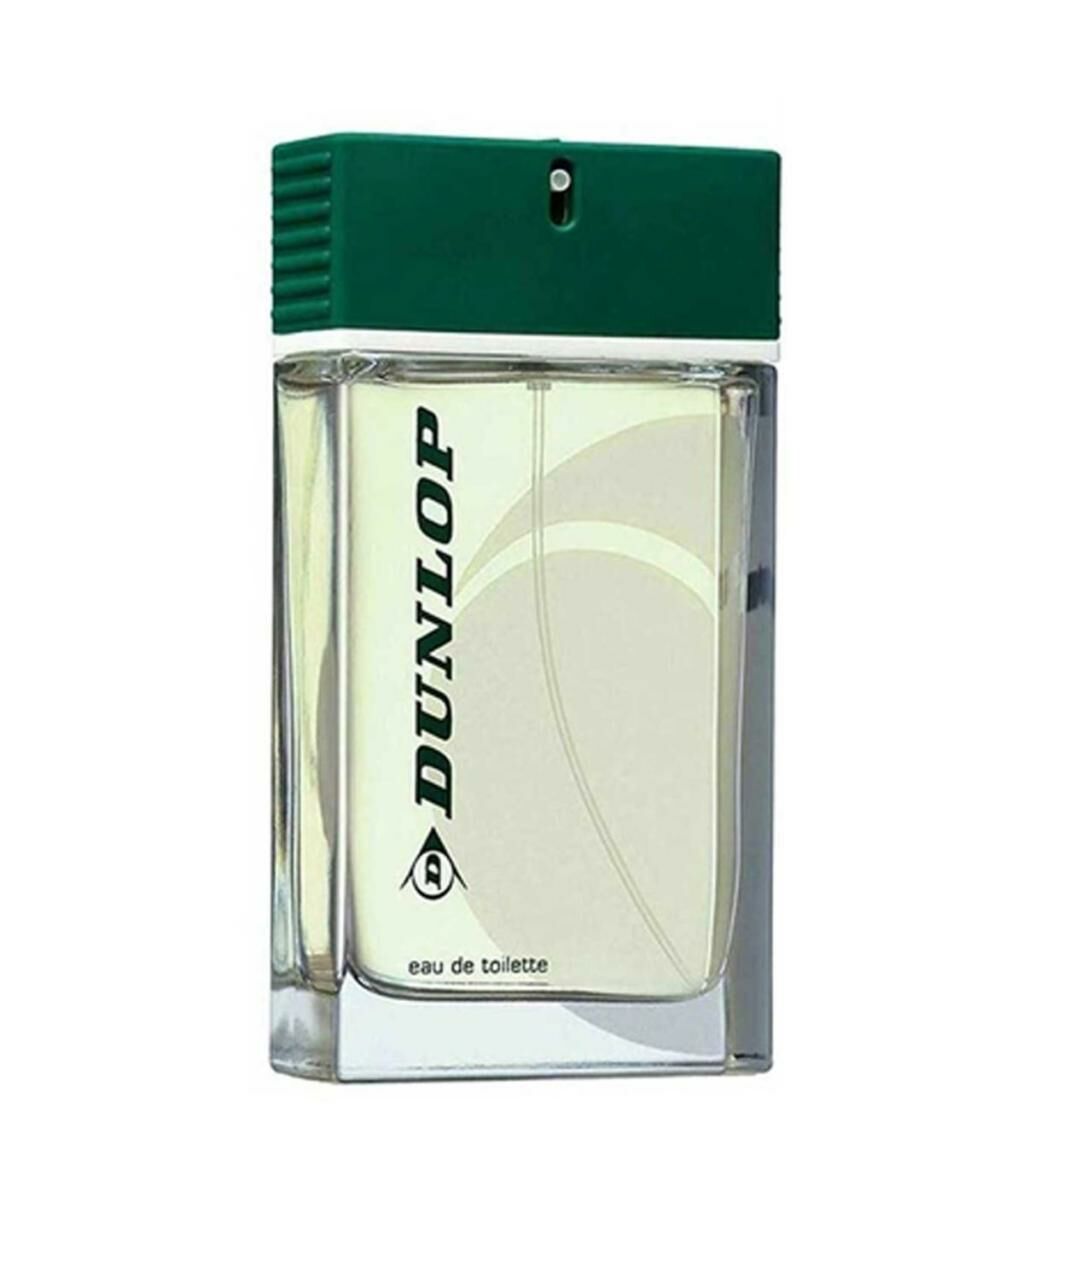 kutusuz açılmamış - Dunlop Klasik EDT 100ML Erkek Parfümü Yeşil